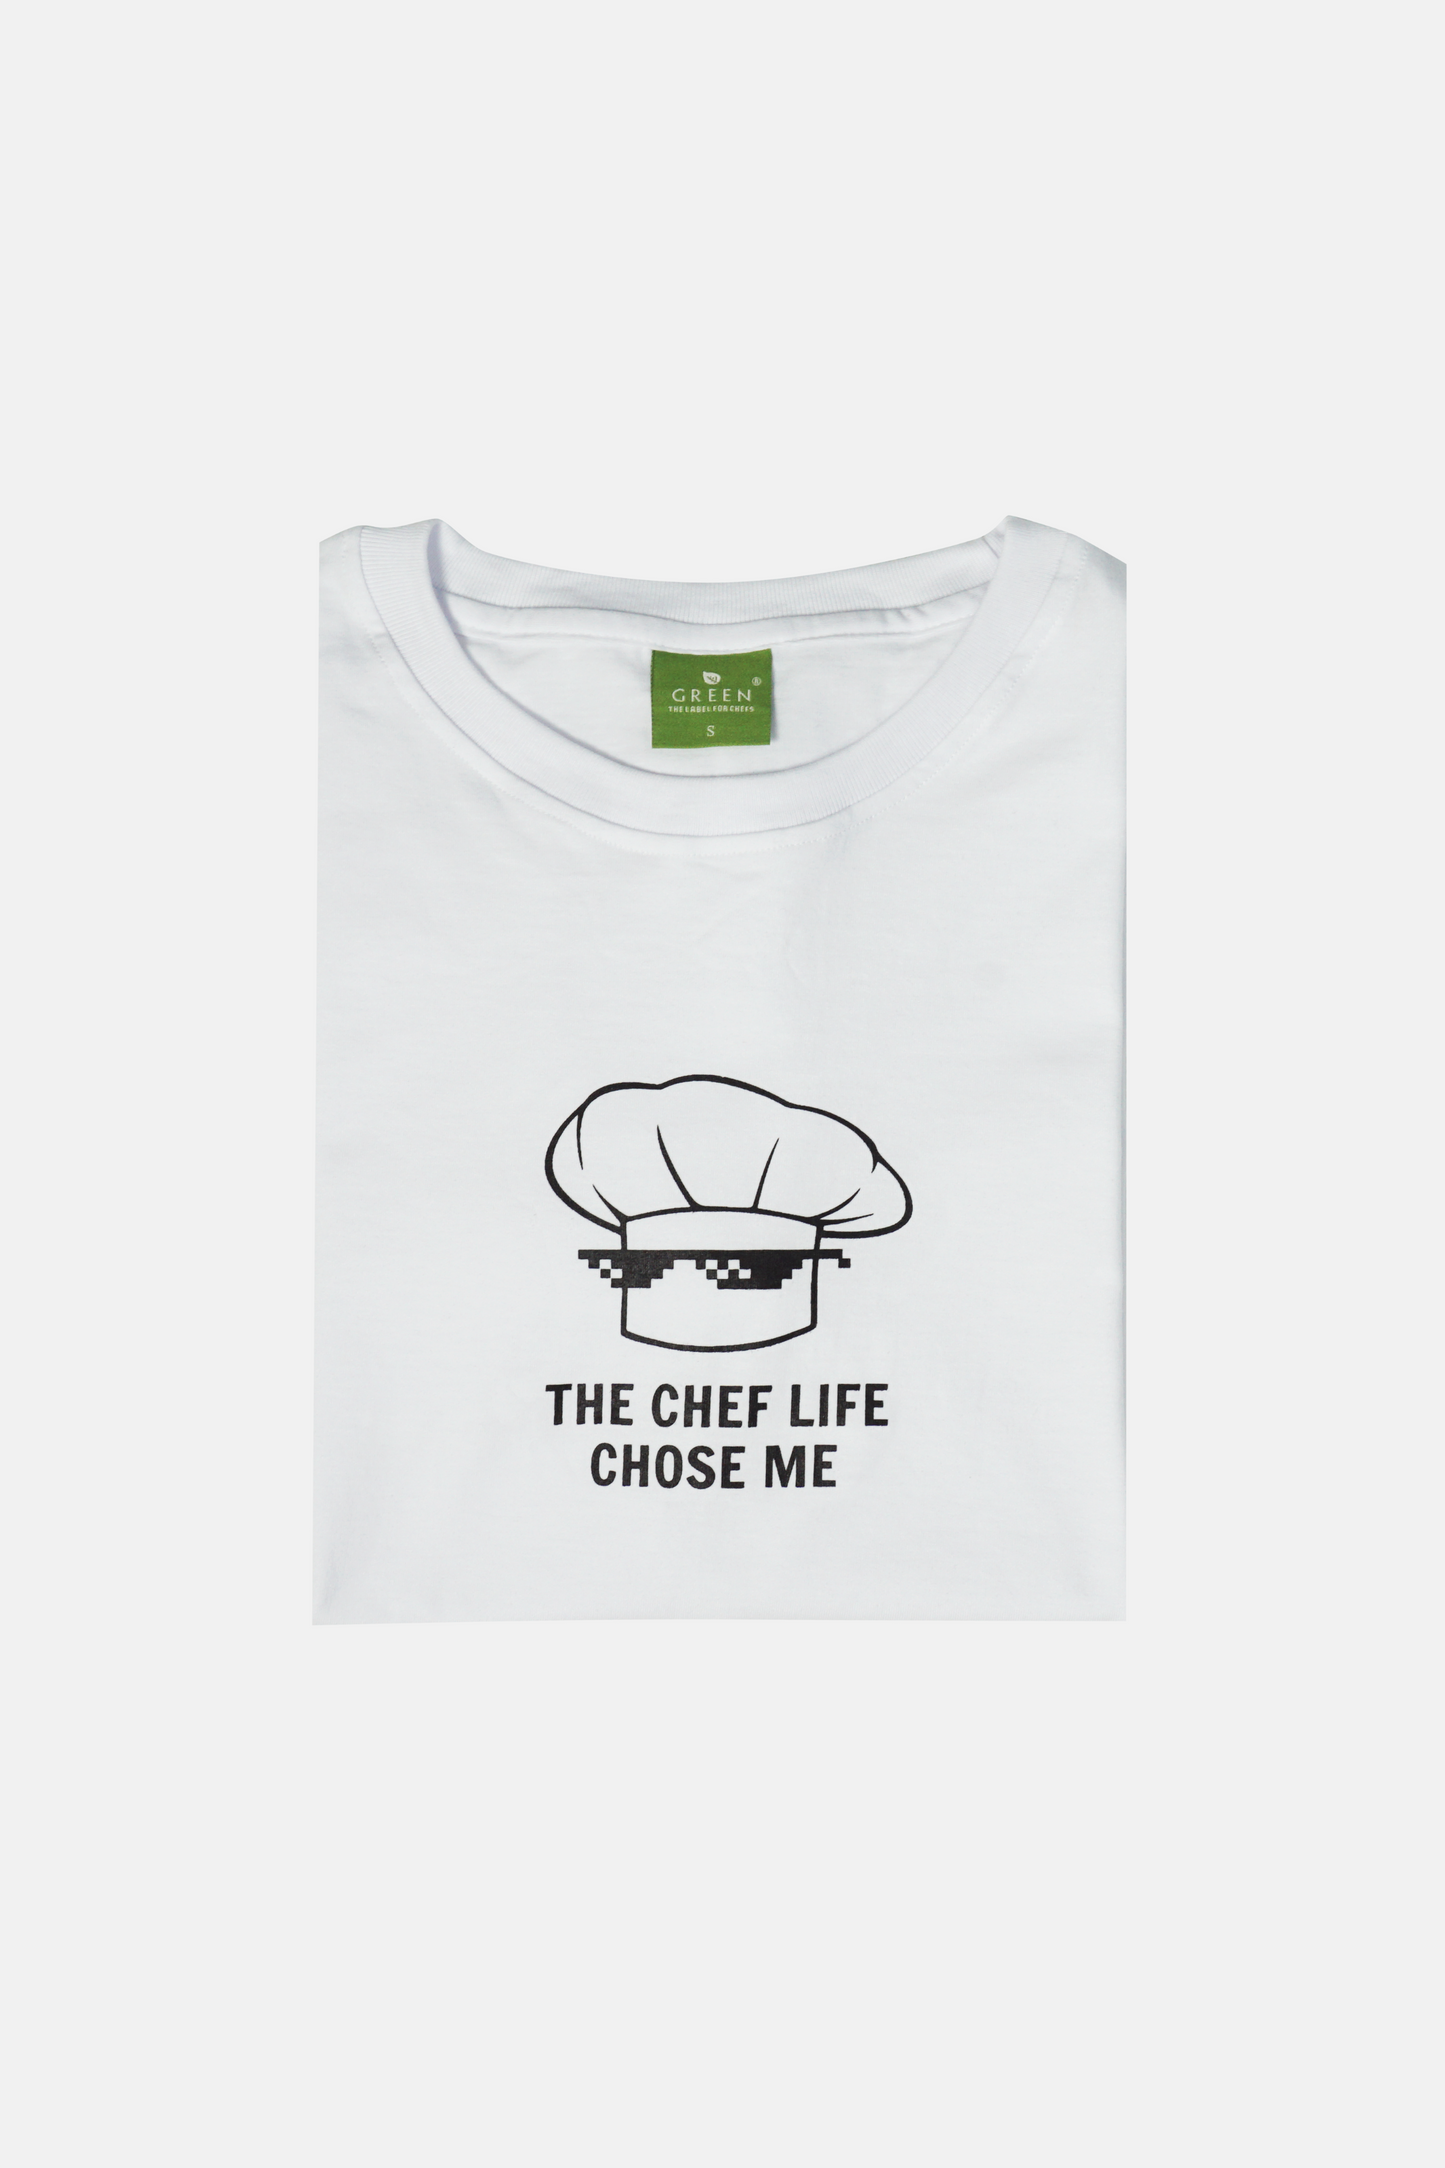 The Chef Life Chose Me cotton tshirt